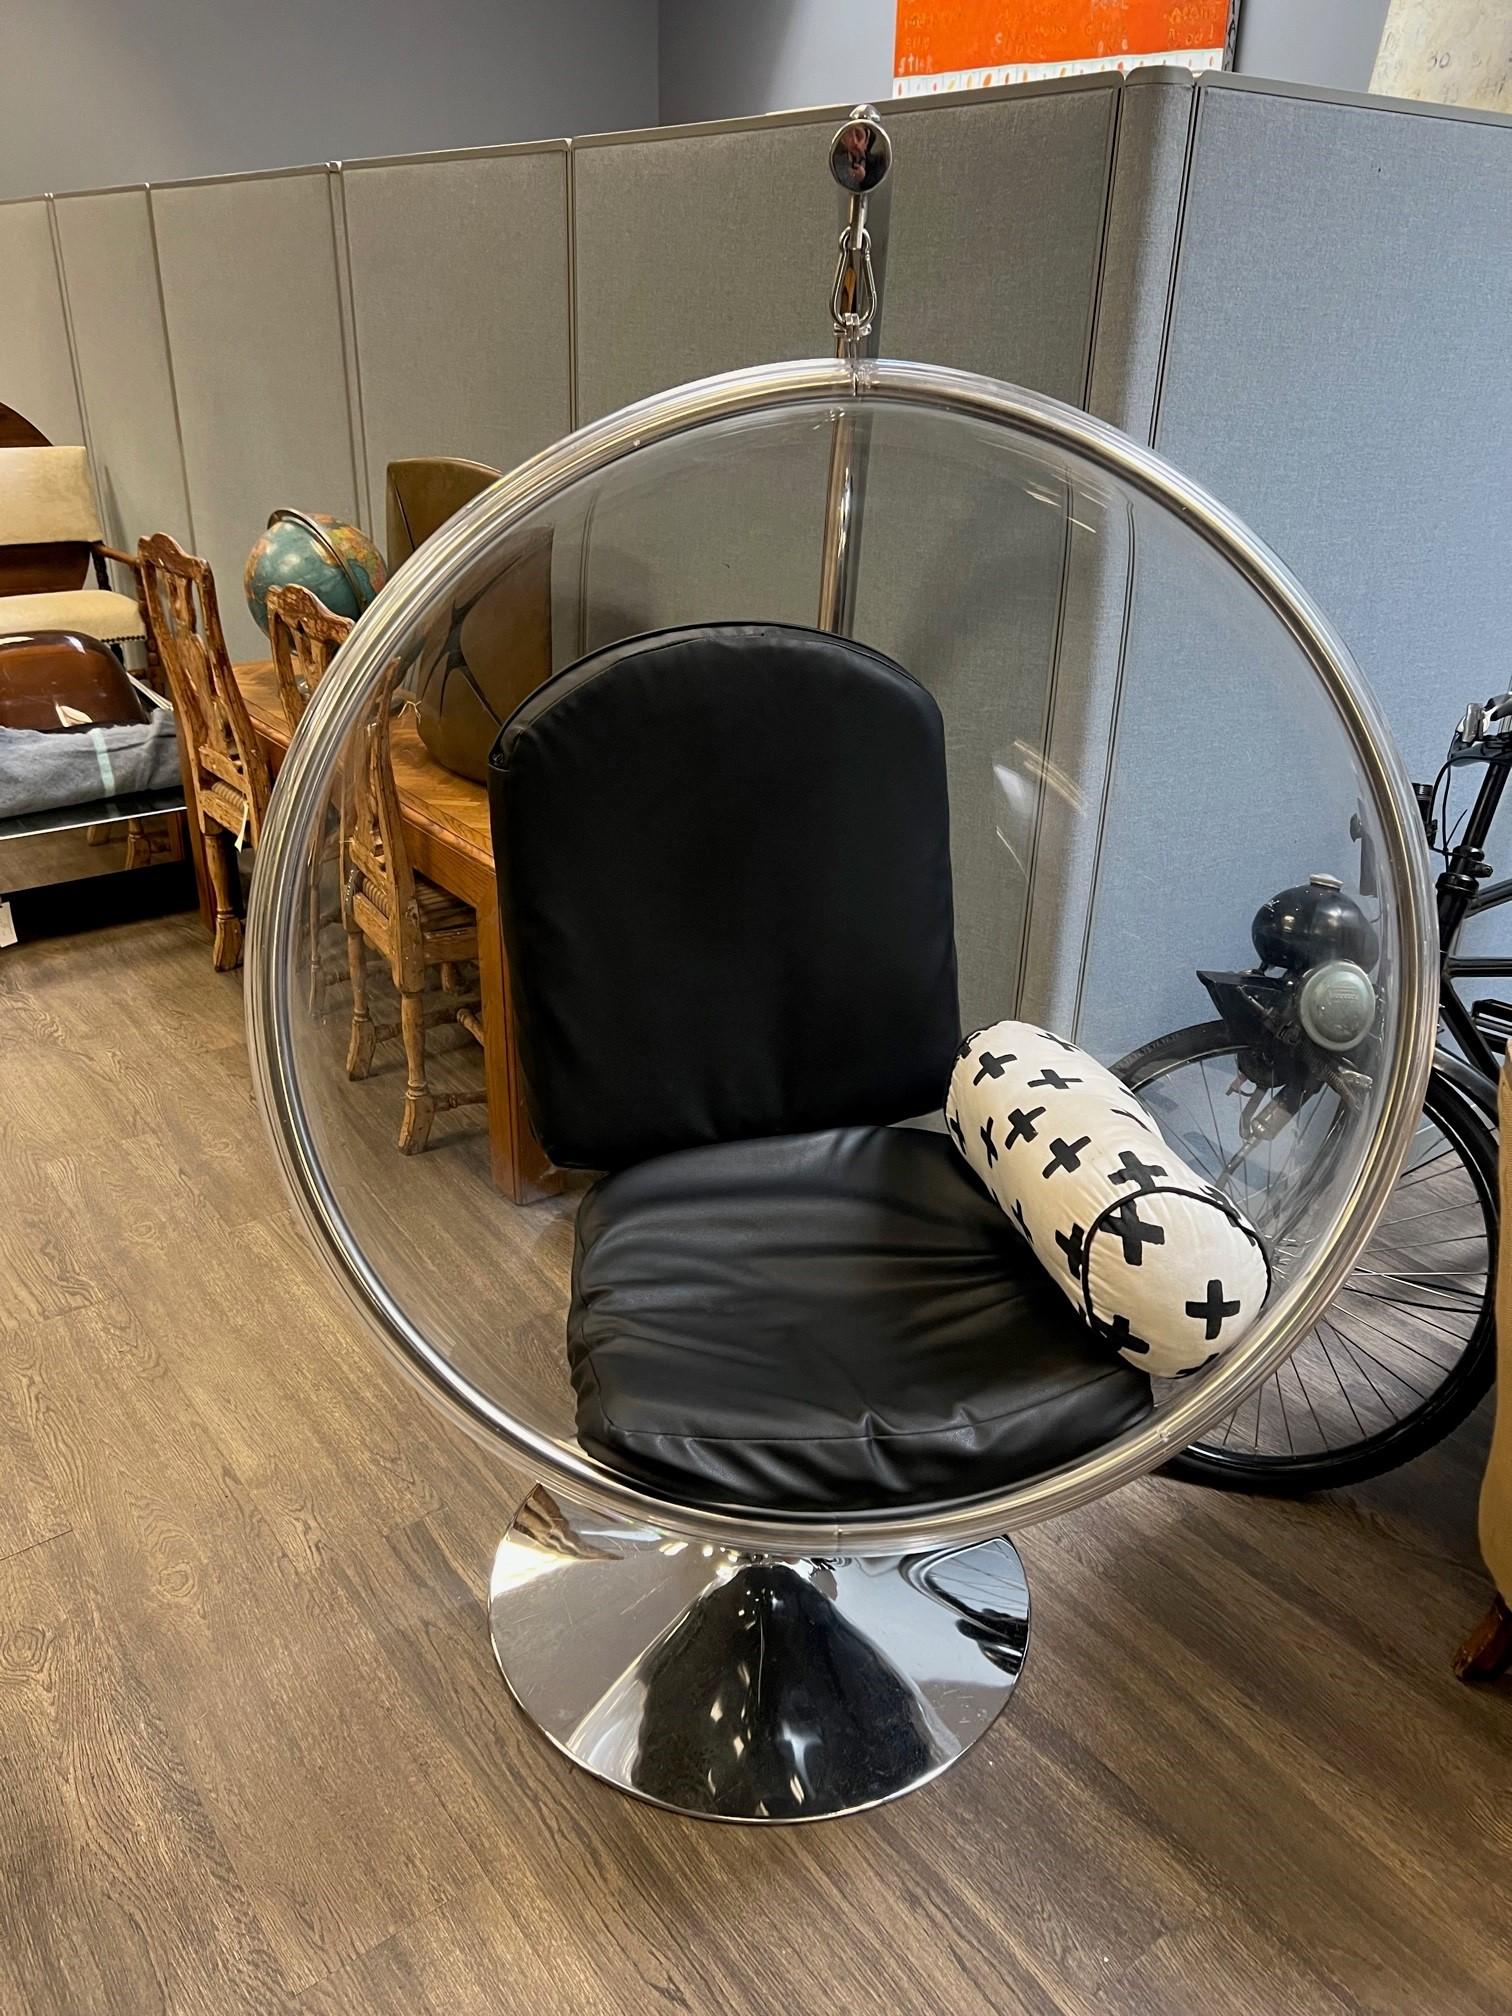 Moderner Kugelsessel des 20. Jahrhunderts. 

Der Bubble Chair wurde ursprünglich 1968 von Eero Aarnio entworfen. 

Eine moderne, futuristische, hängende Blasenform aus klarem Acryl mit einem verchromten Metall-Drehrahmen. 

Mit zwei schwarzen